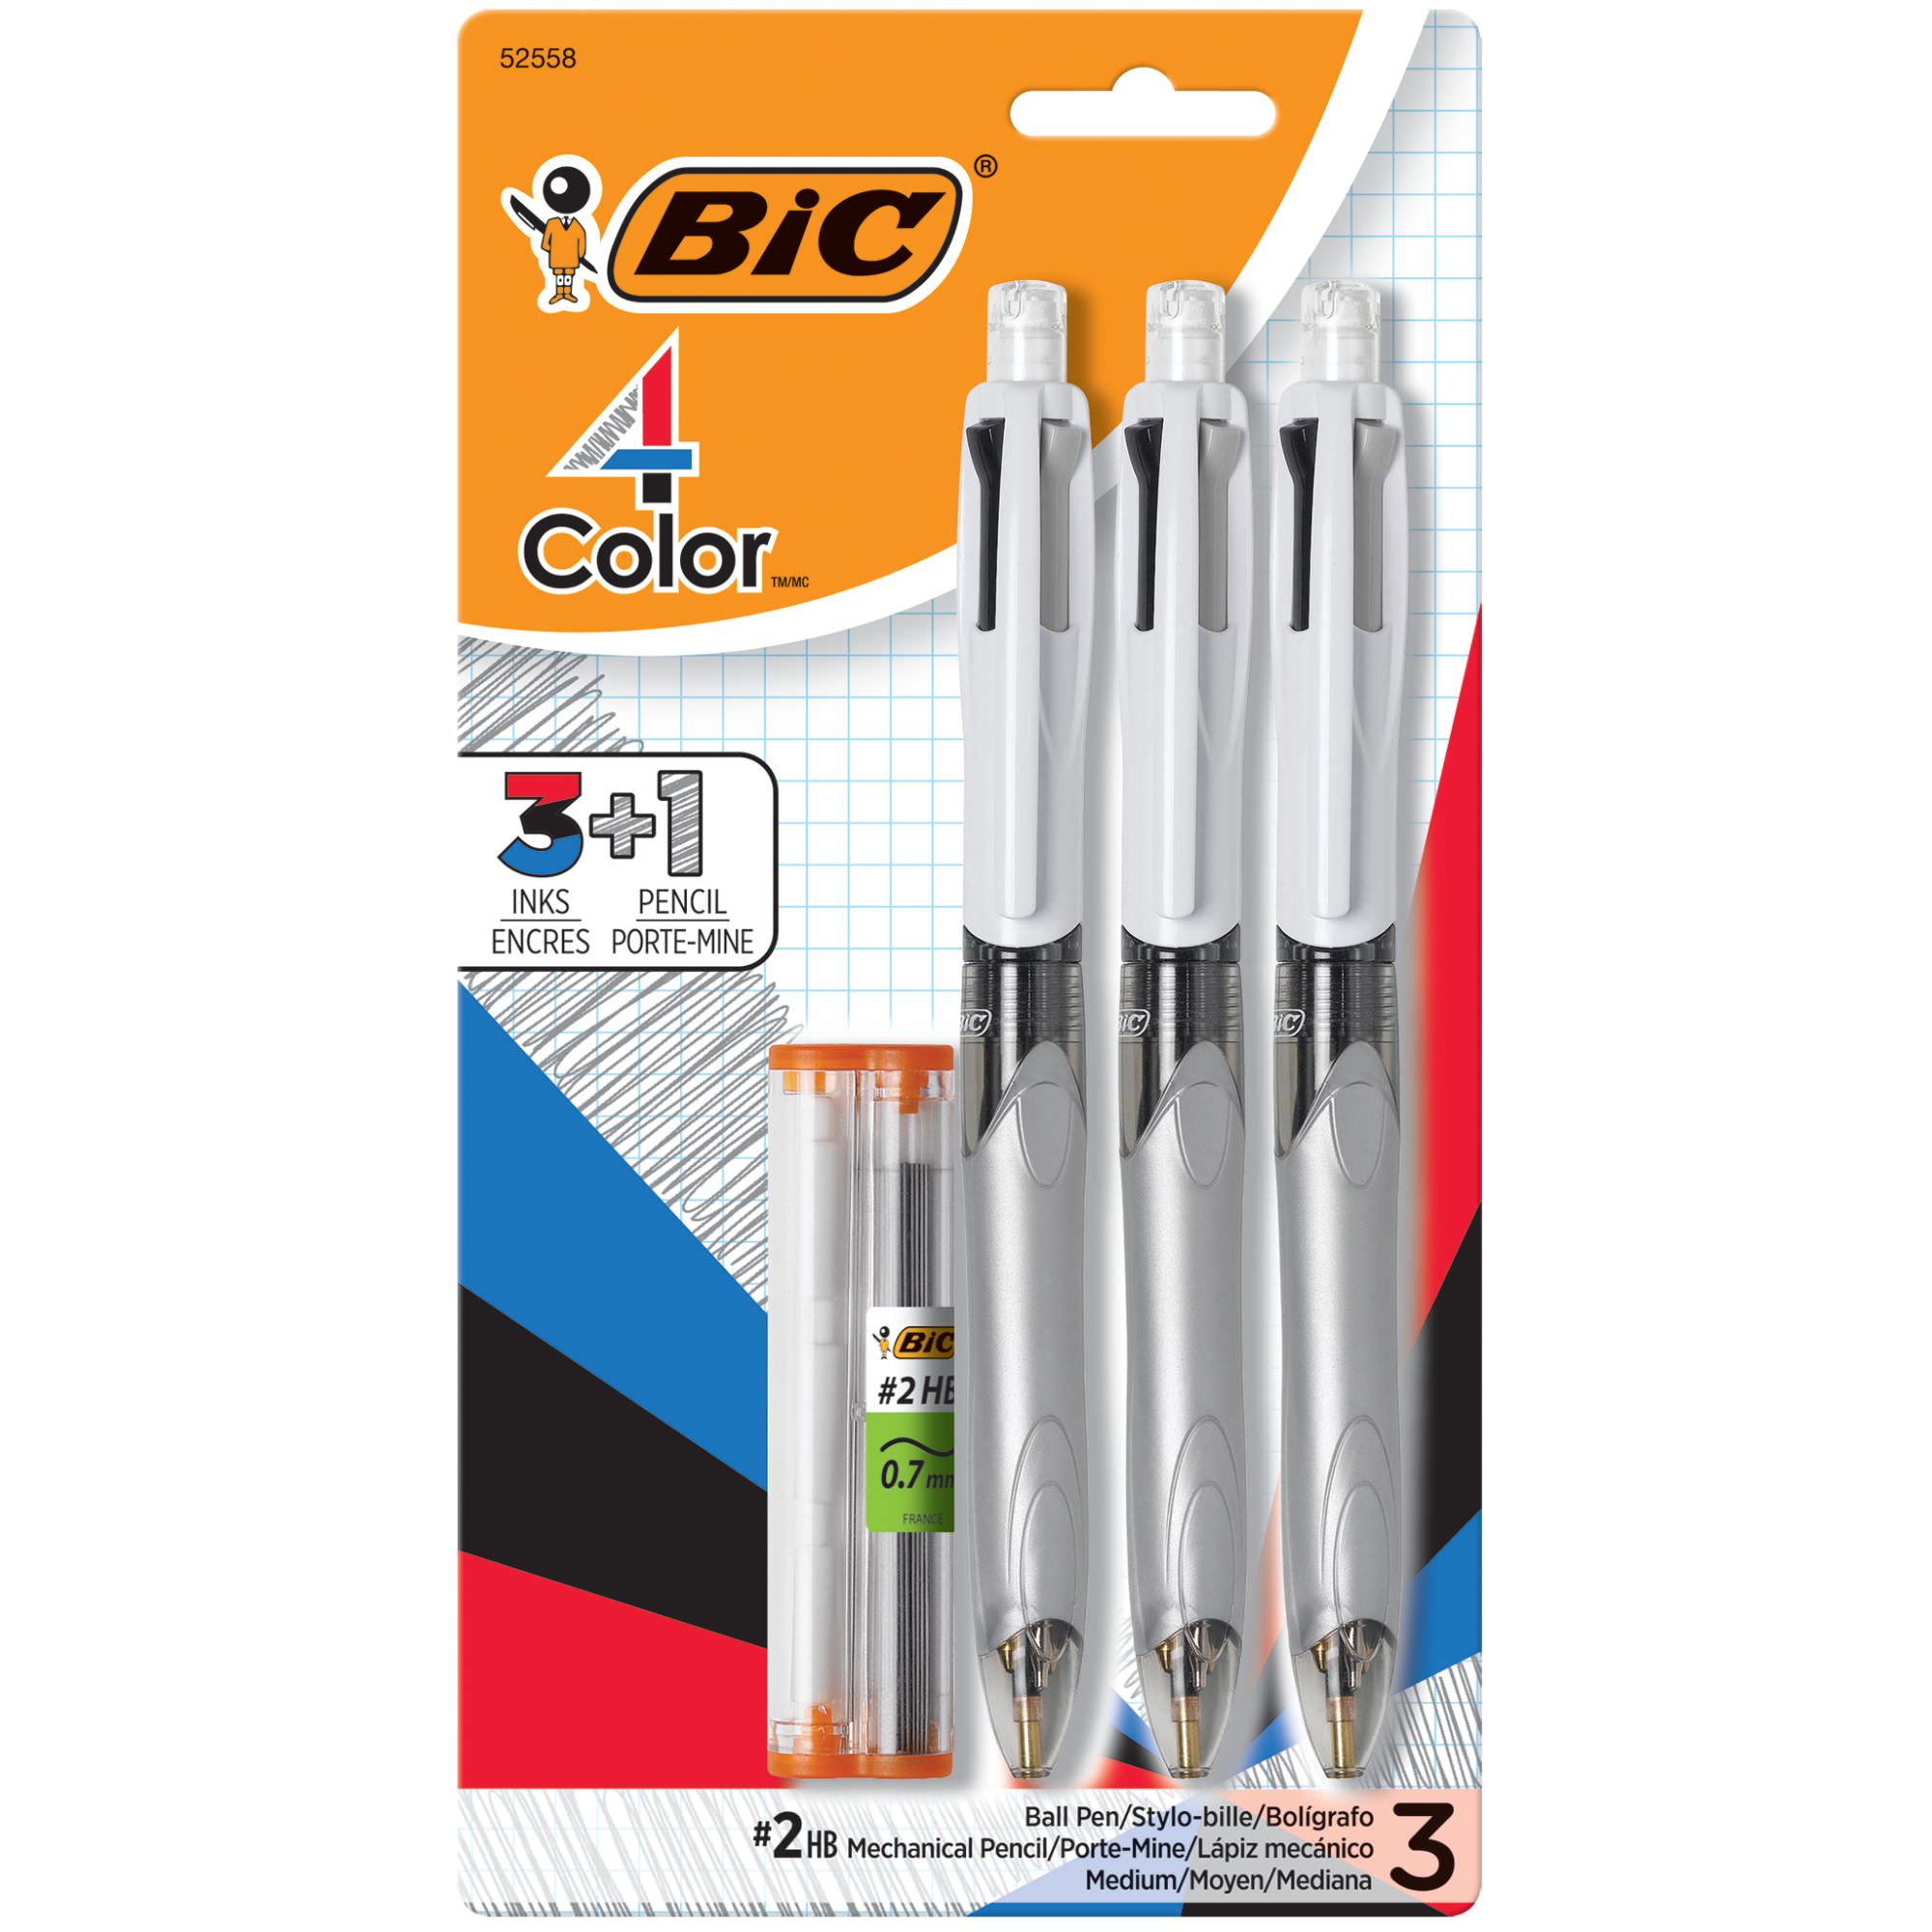 MRM41 Bic 4-color Retractable Pen Refills Assorted Medium Point 4 / Pack